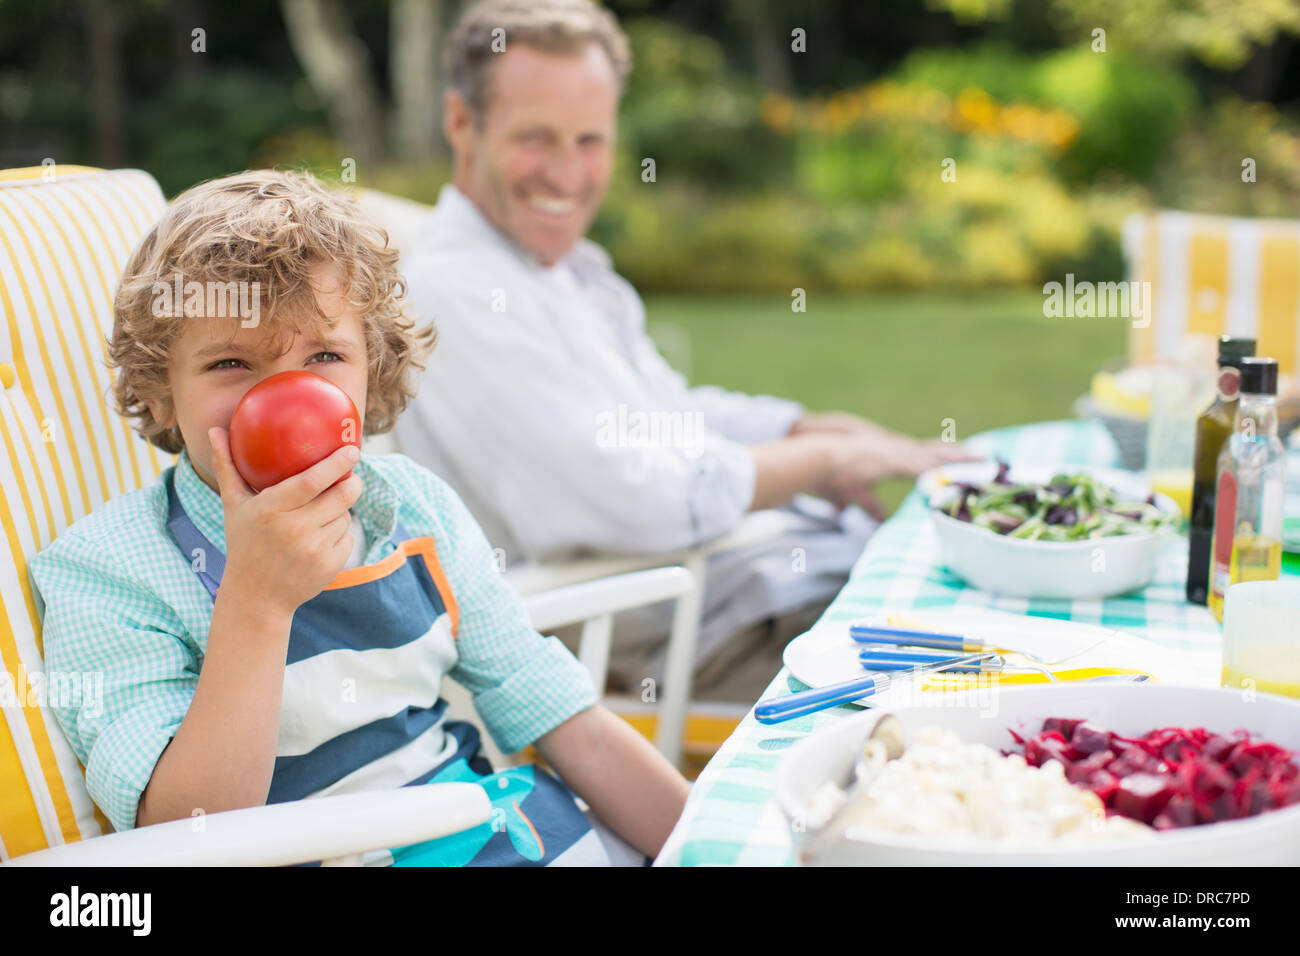 Garçon jouant avec de la nourriture à table in backyard Banque D'Images